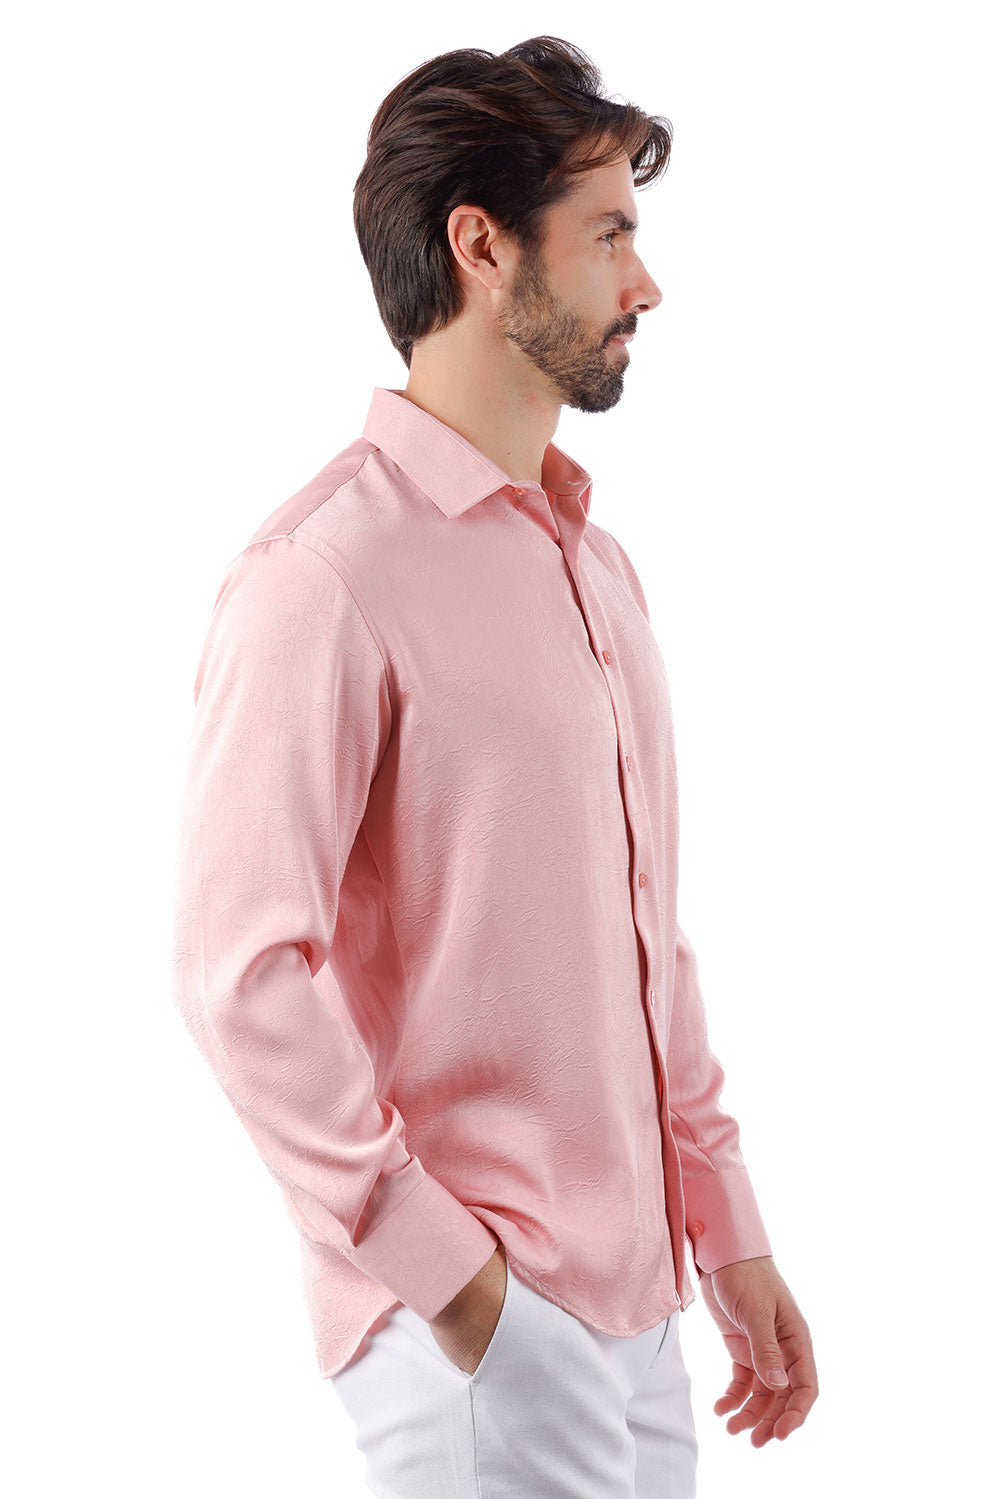 BARABAS Men's Textured Stretch Button Down Long Sleeve Shirt 4B34 Pink